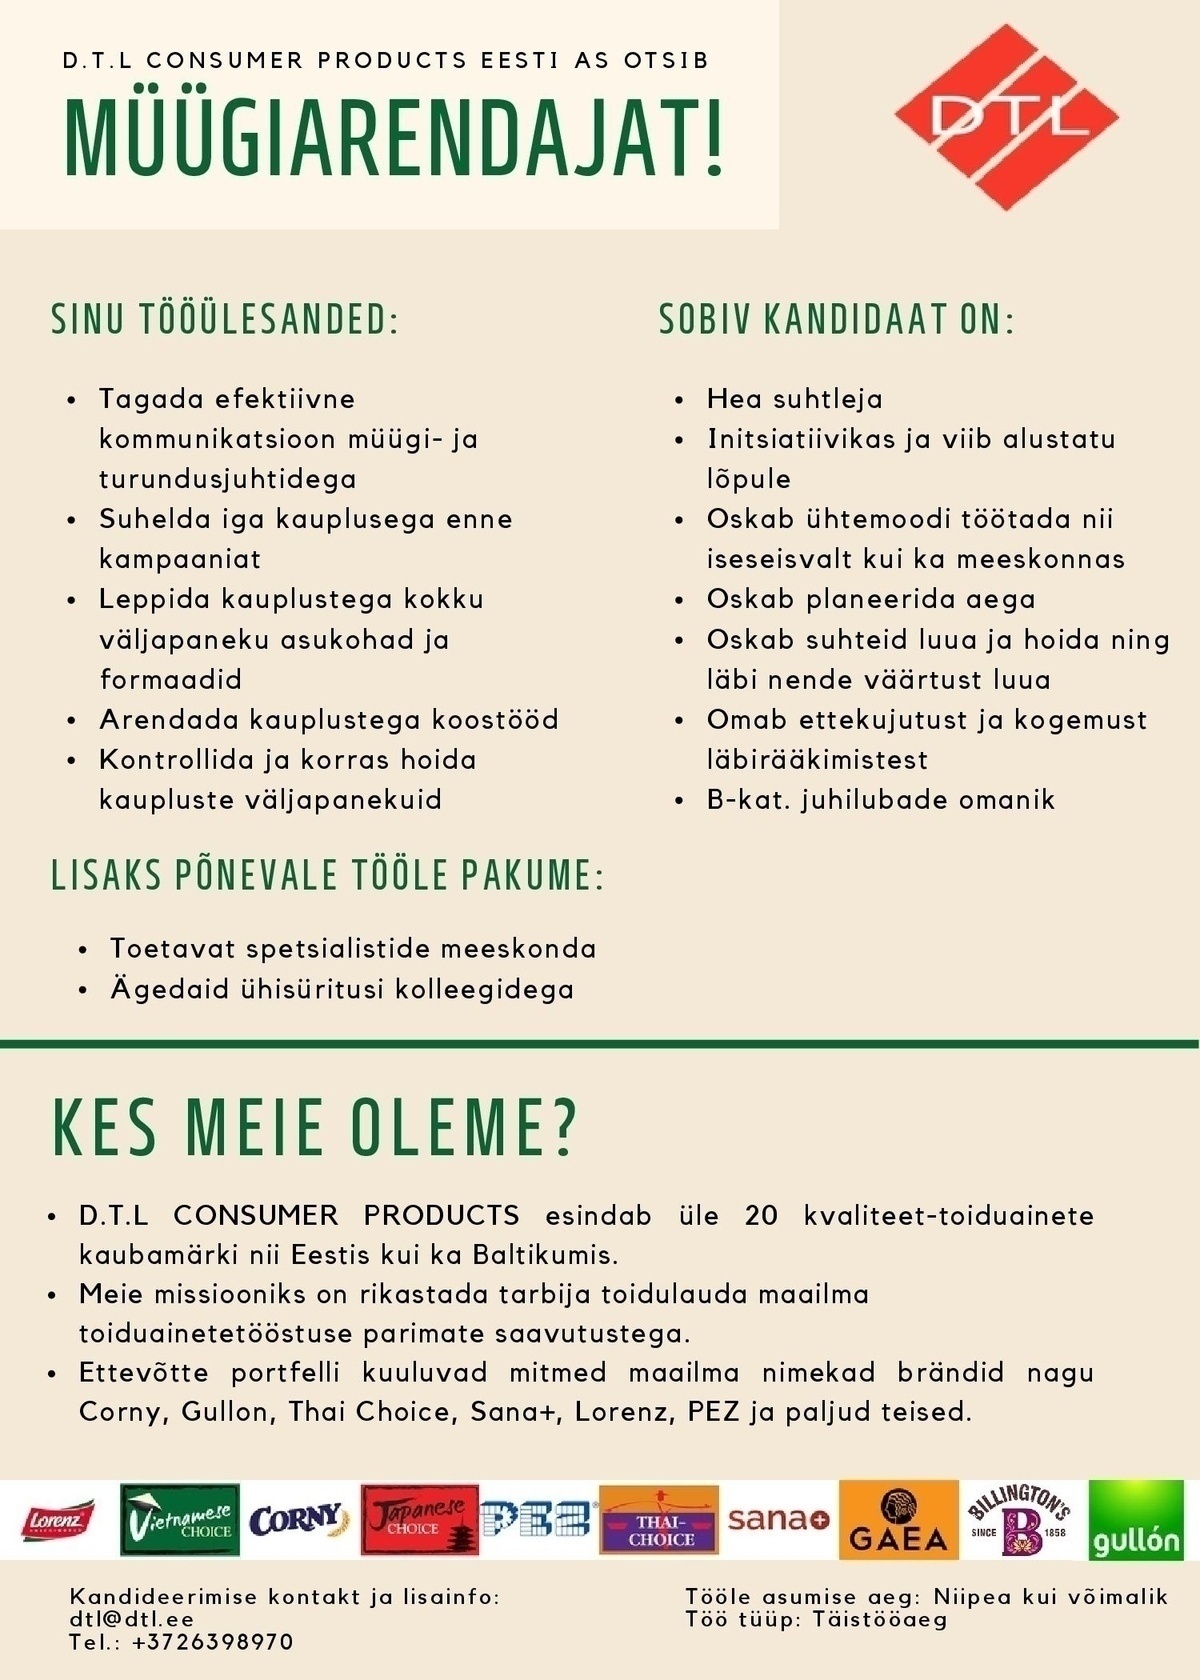 D.T.L. Consumer Products Eesti AS Müügiarendaja